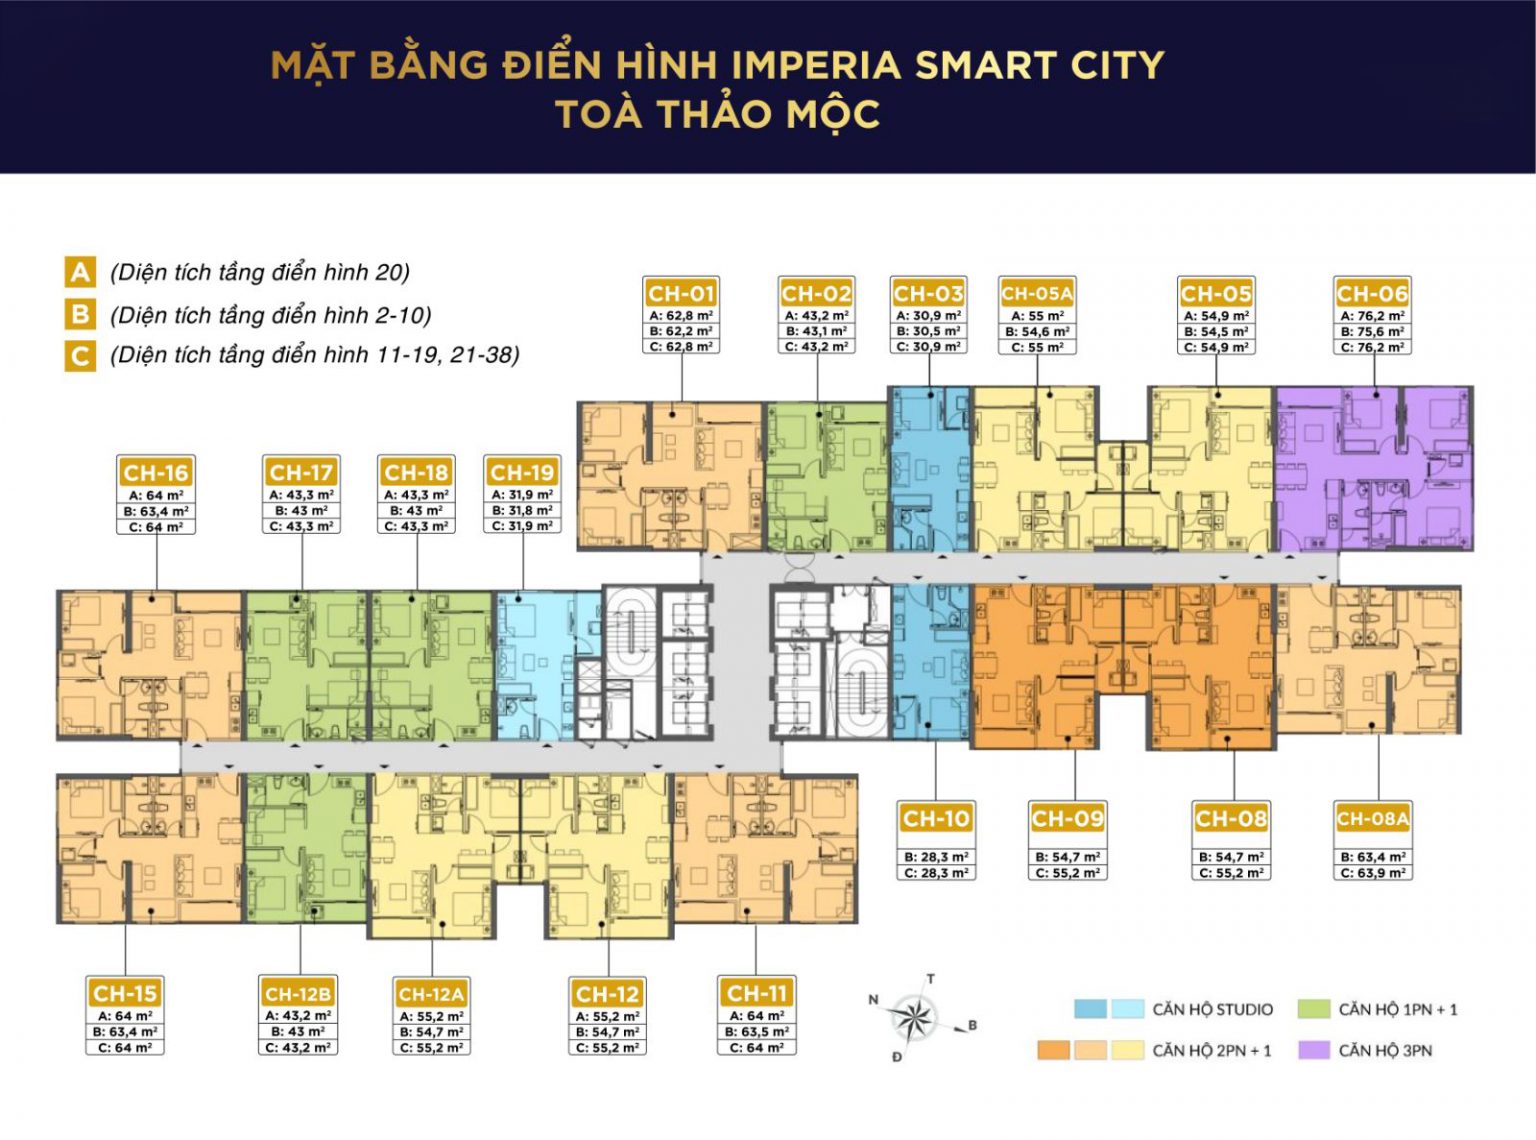 Cần cho thuê căn hộ 2PN +1 2WC diện tích 63,5m2 tòa l5 - Thảo Mộc Imperia Smart City